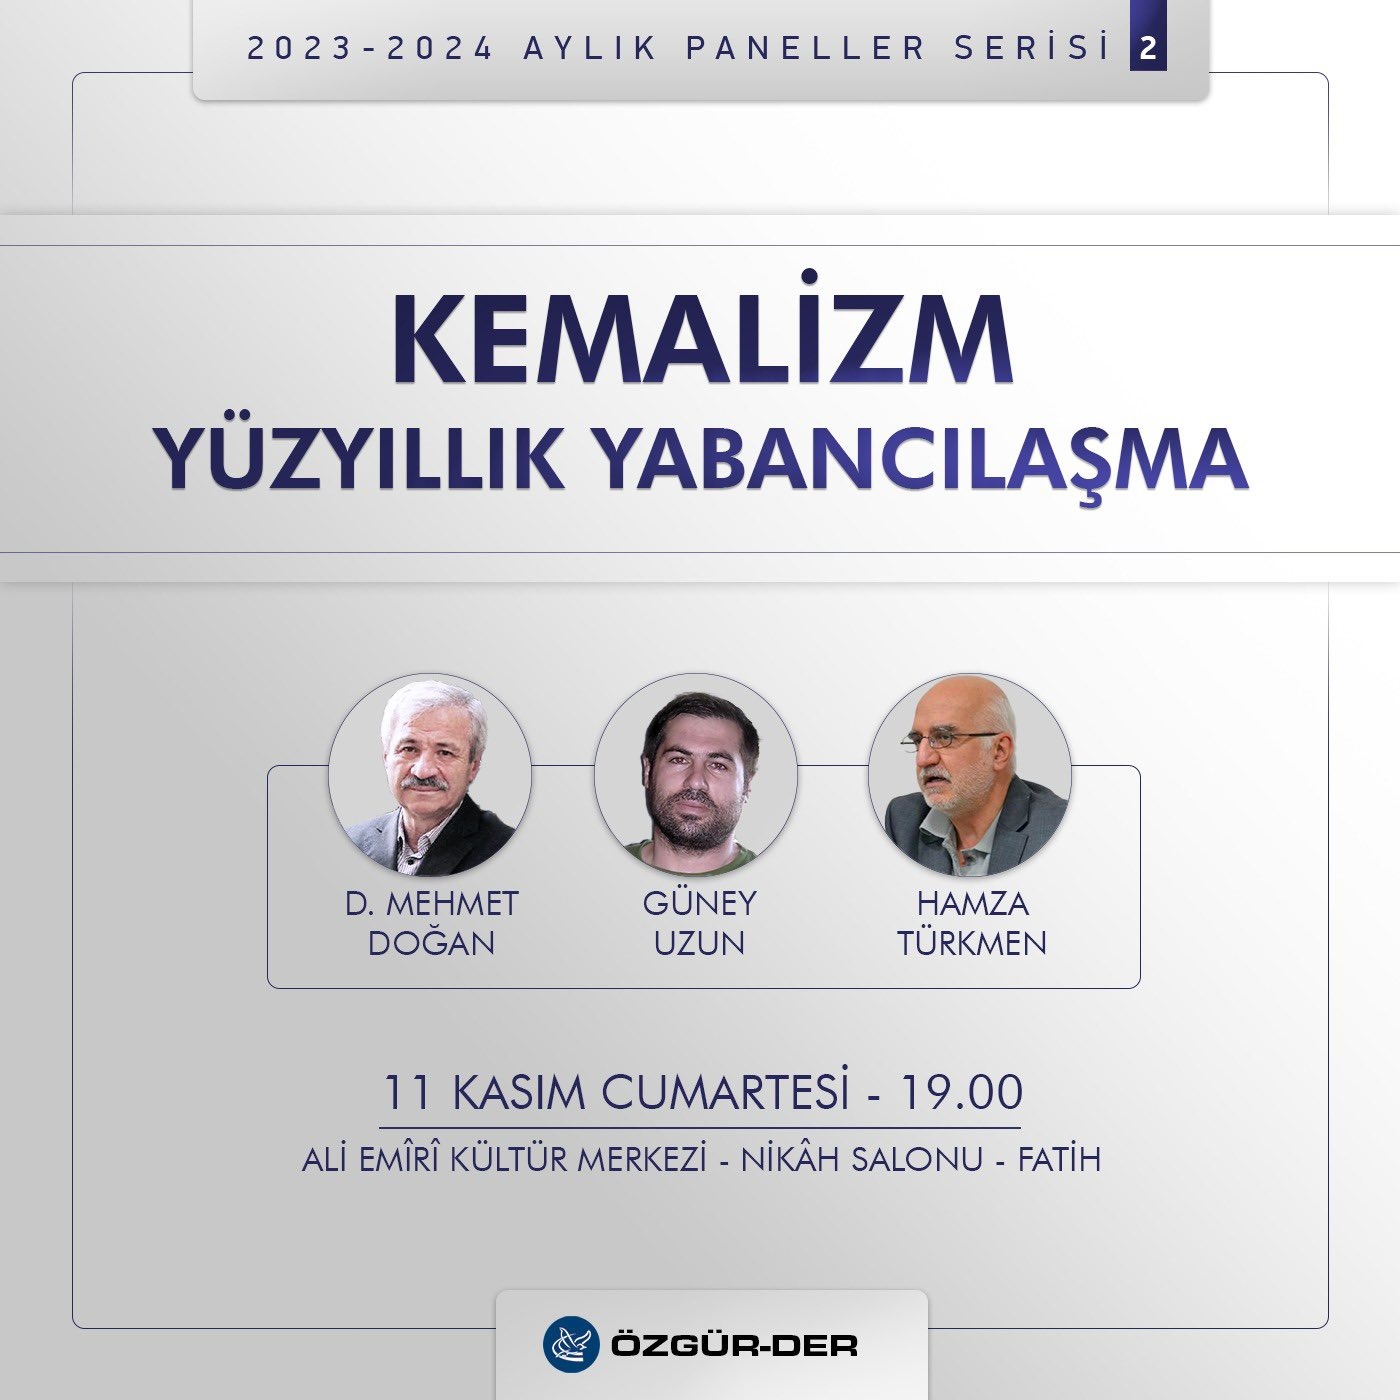 D. Mehmet Doğan “Kemalizm Yüzyıllık Yabancılaşma” panelinde konuşacak